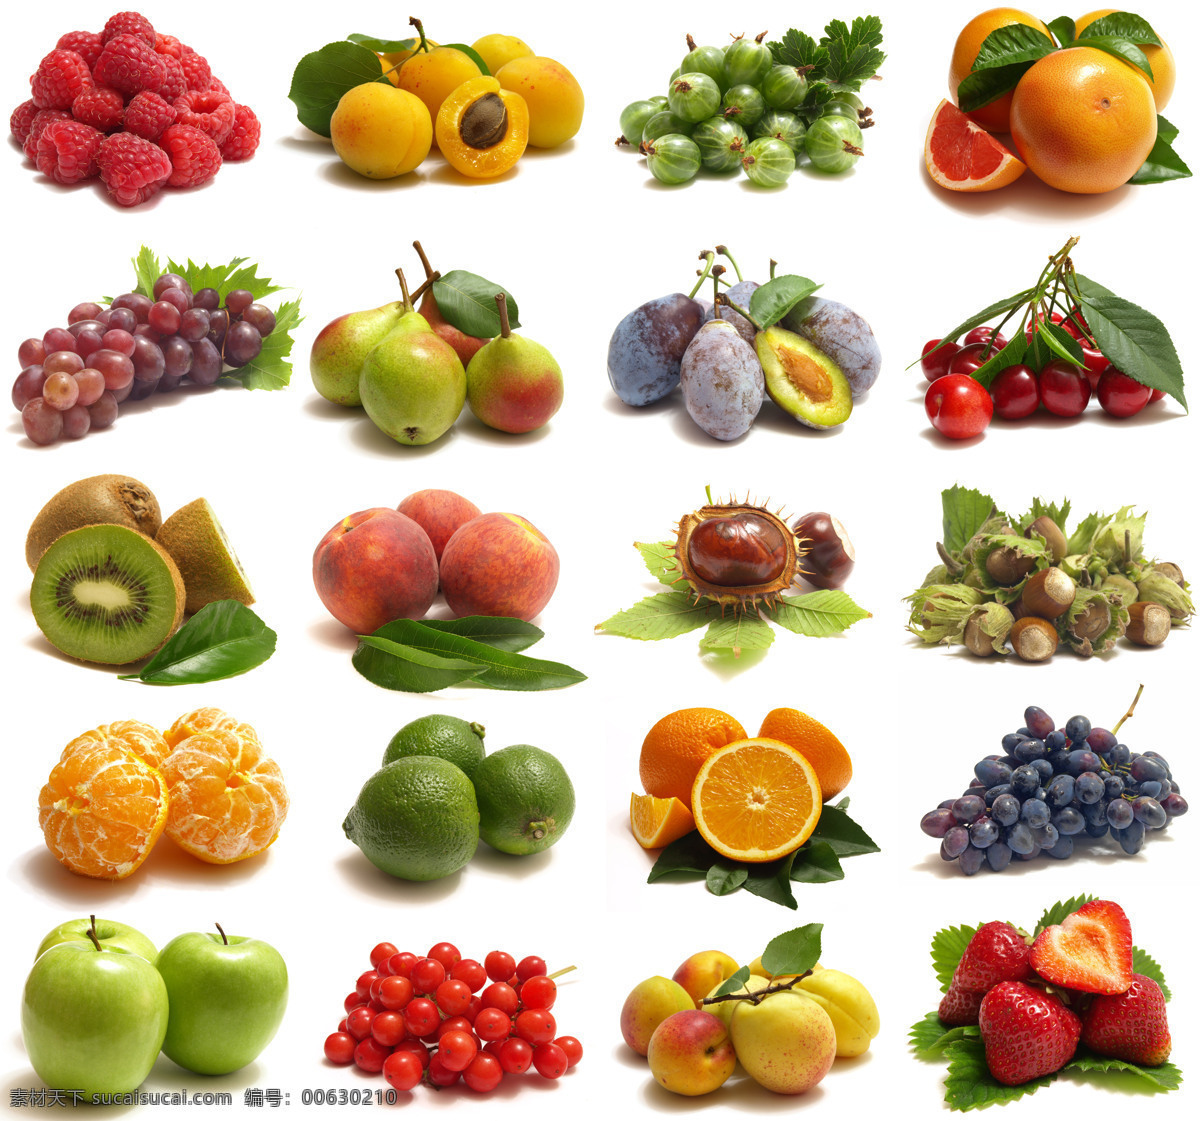 水果 广告 素材图片 树莓 杏 橘子 葡萄 梨 猕猴桃 桃子 板栗 橙子 苹果 新鲜水果 水果摄影 水果广告 食物 水果图片 餐饮美食